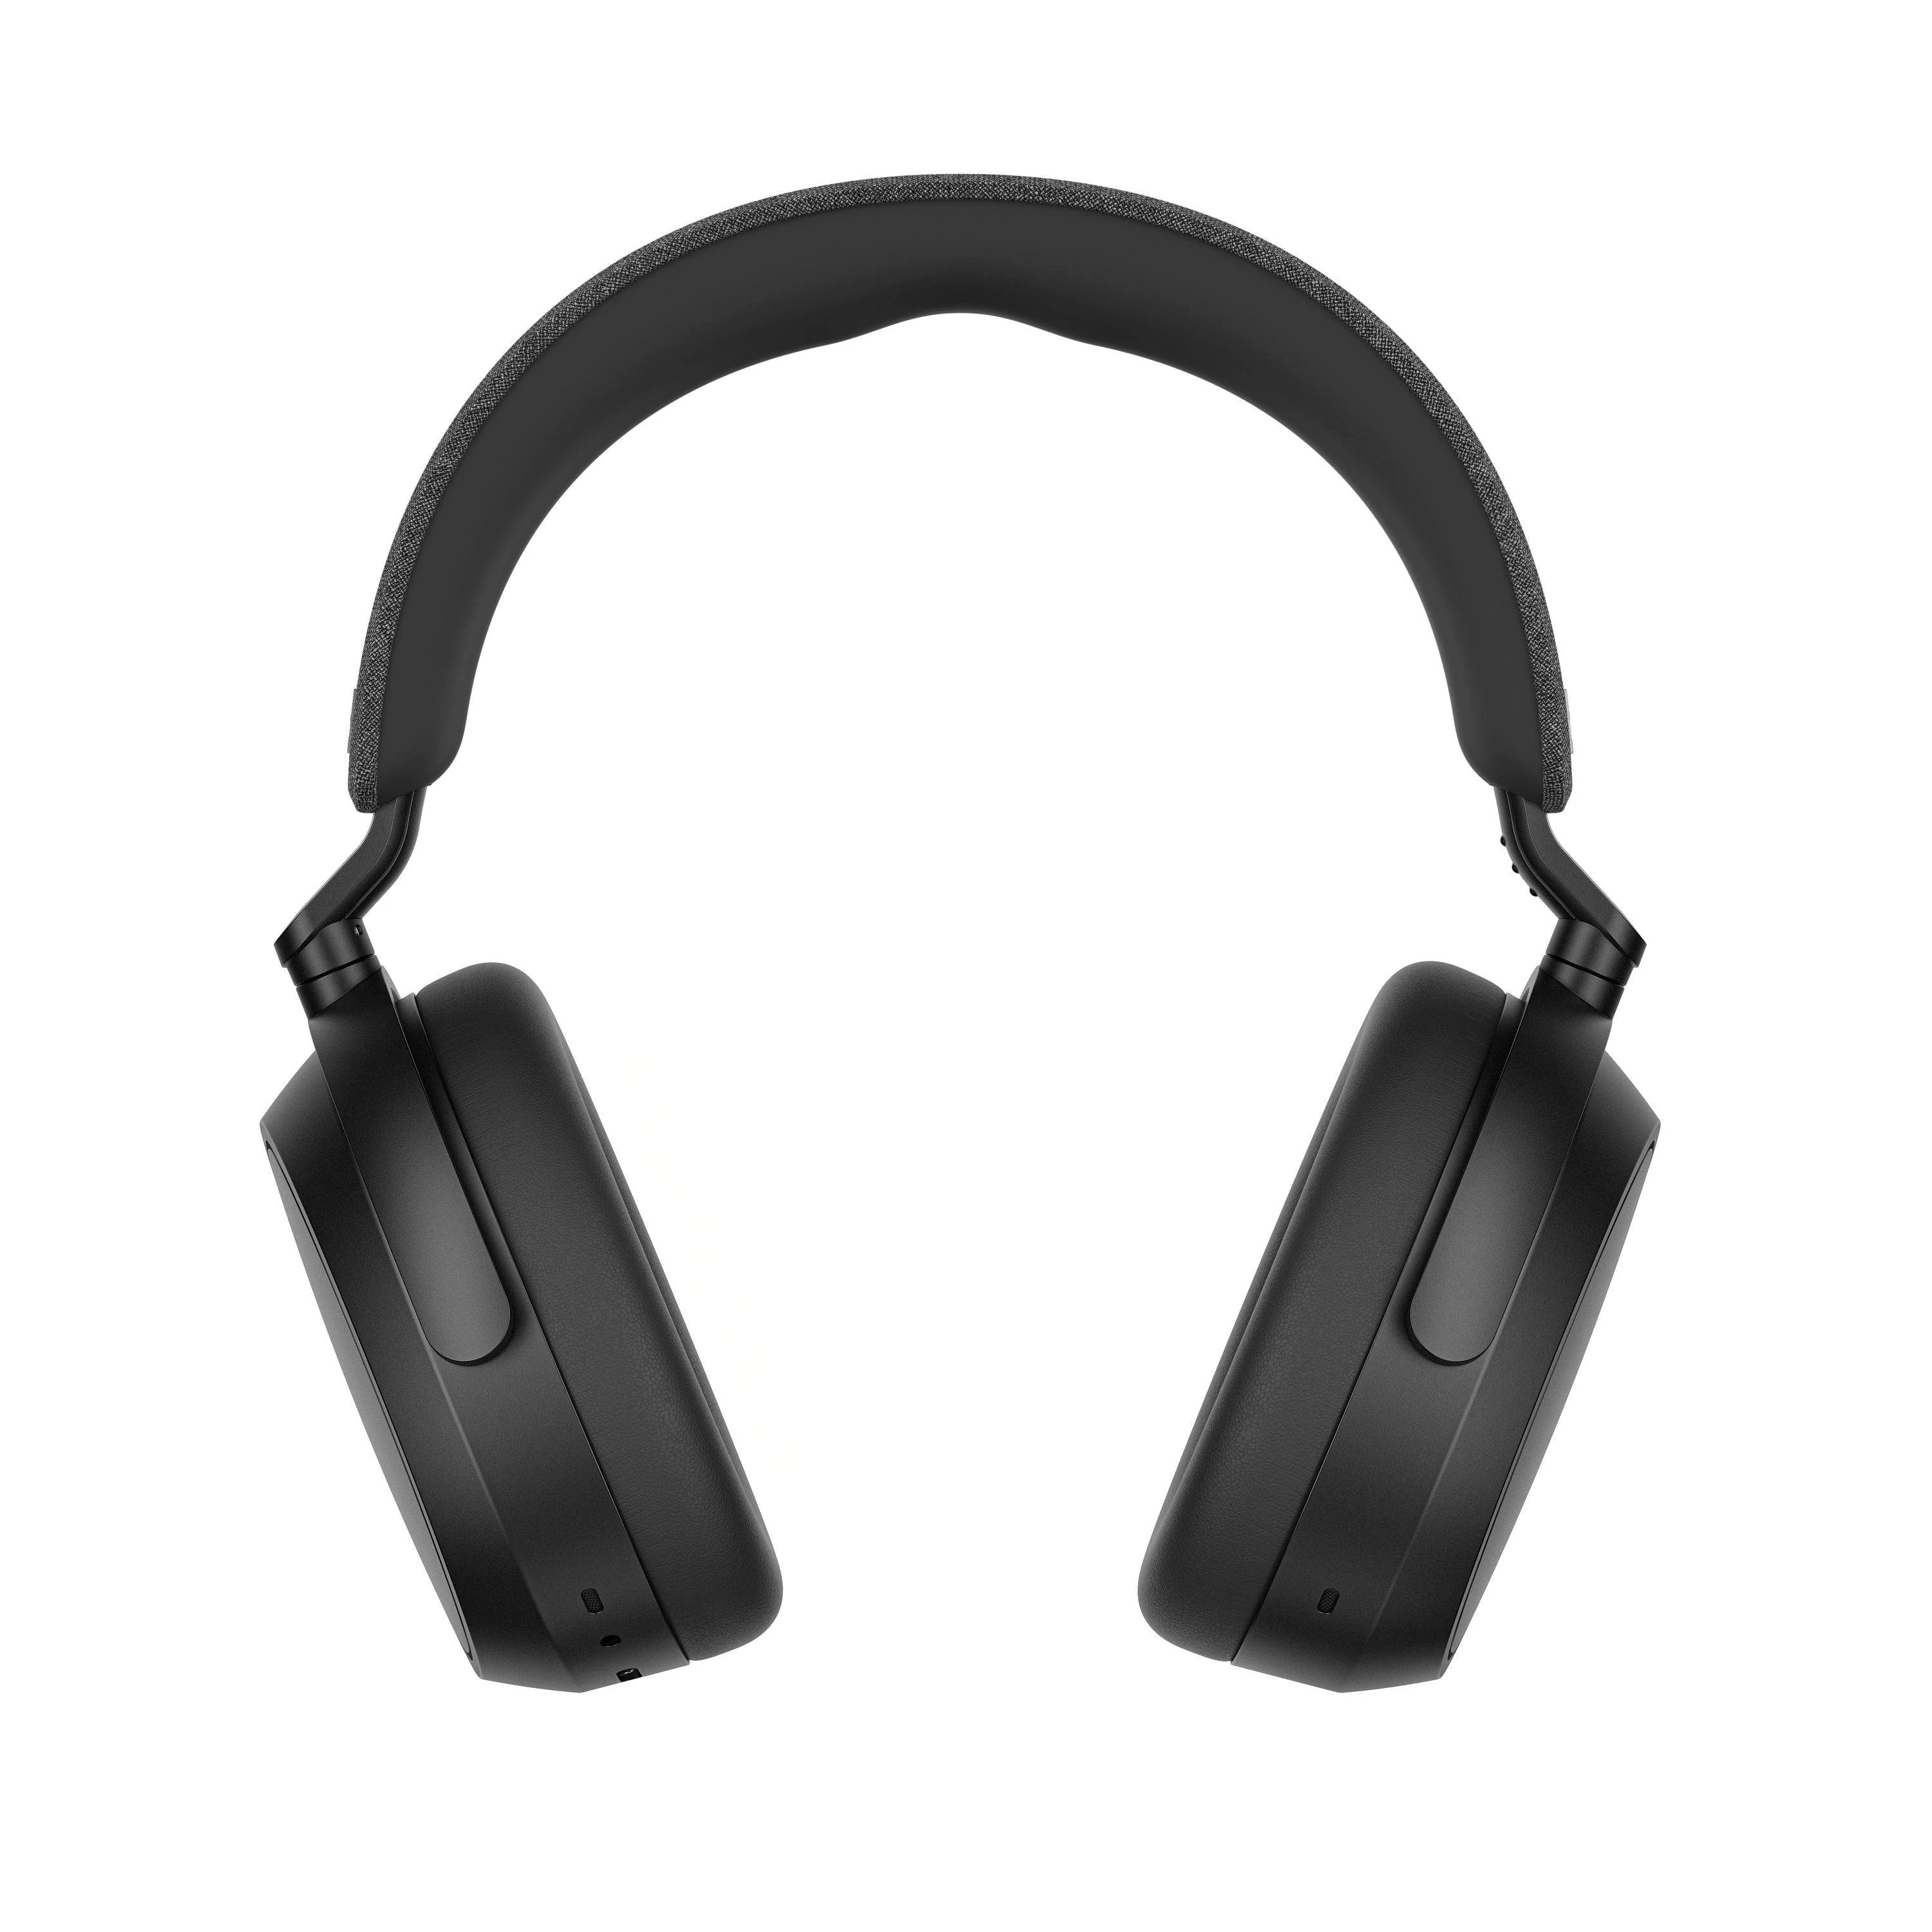 Sennheiser Momentum 4 Wireless Review: Great Sound, Even Better